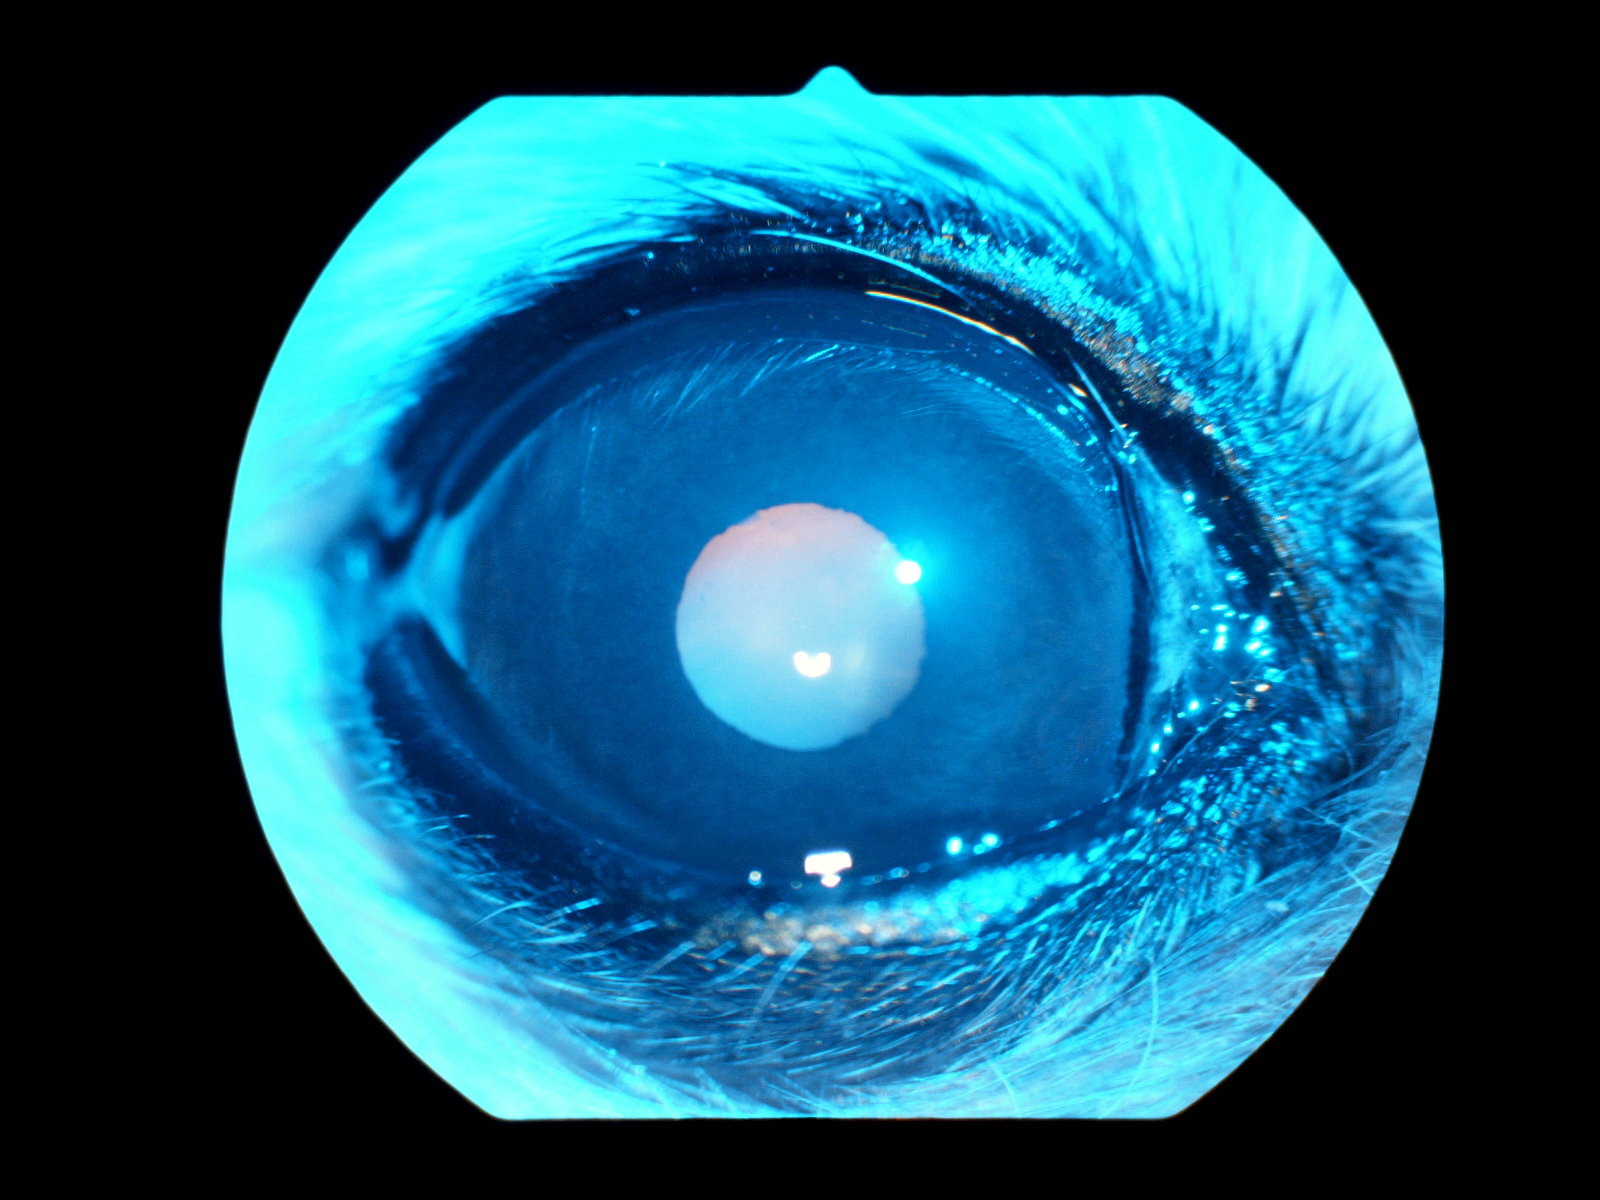 【眼科Short⑦】眼科特診を受診した子たちの紹介「進行性網膜萎縮」|りんごの樹動物事例紹介・セカンドオピニオン情報 | 愛知県安城市の動物病院です